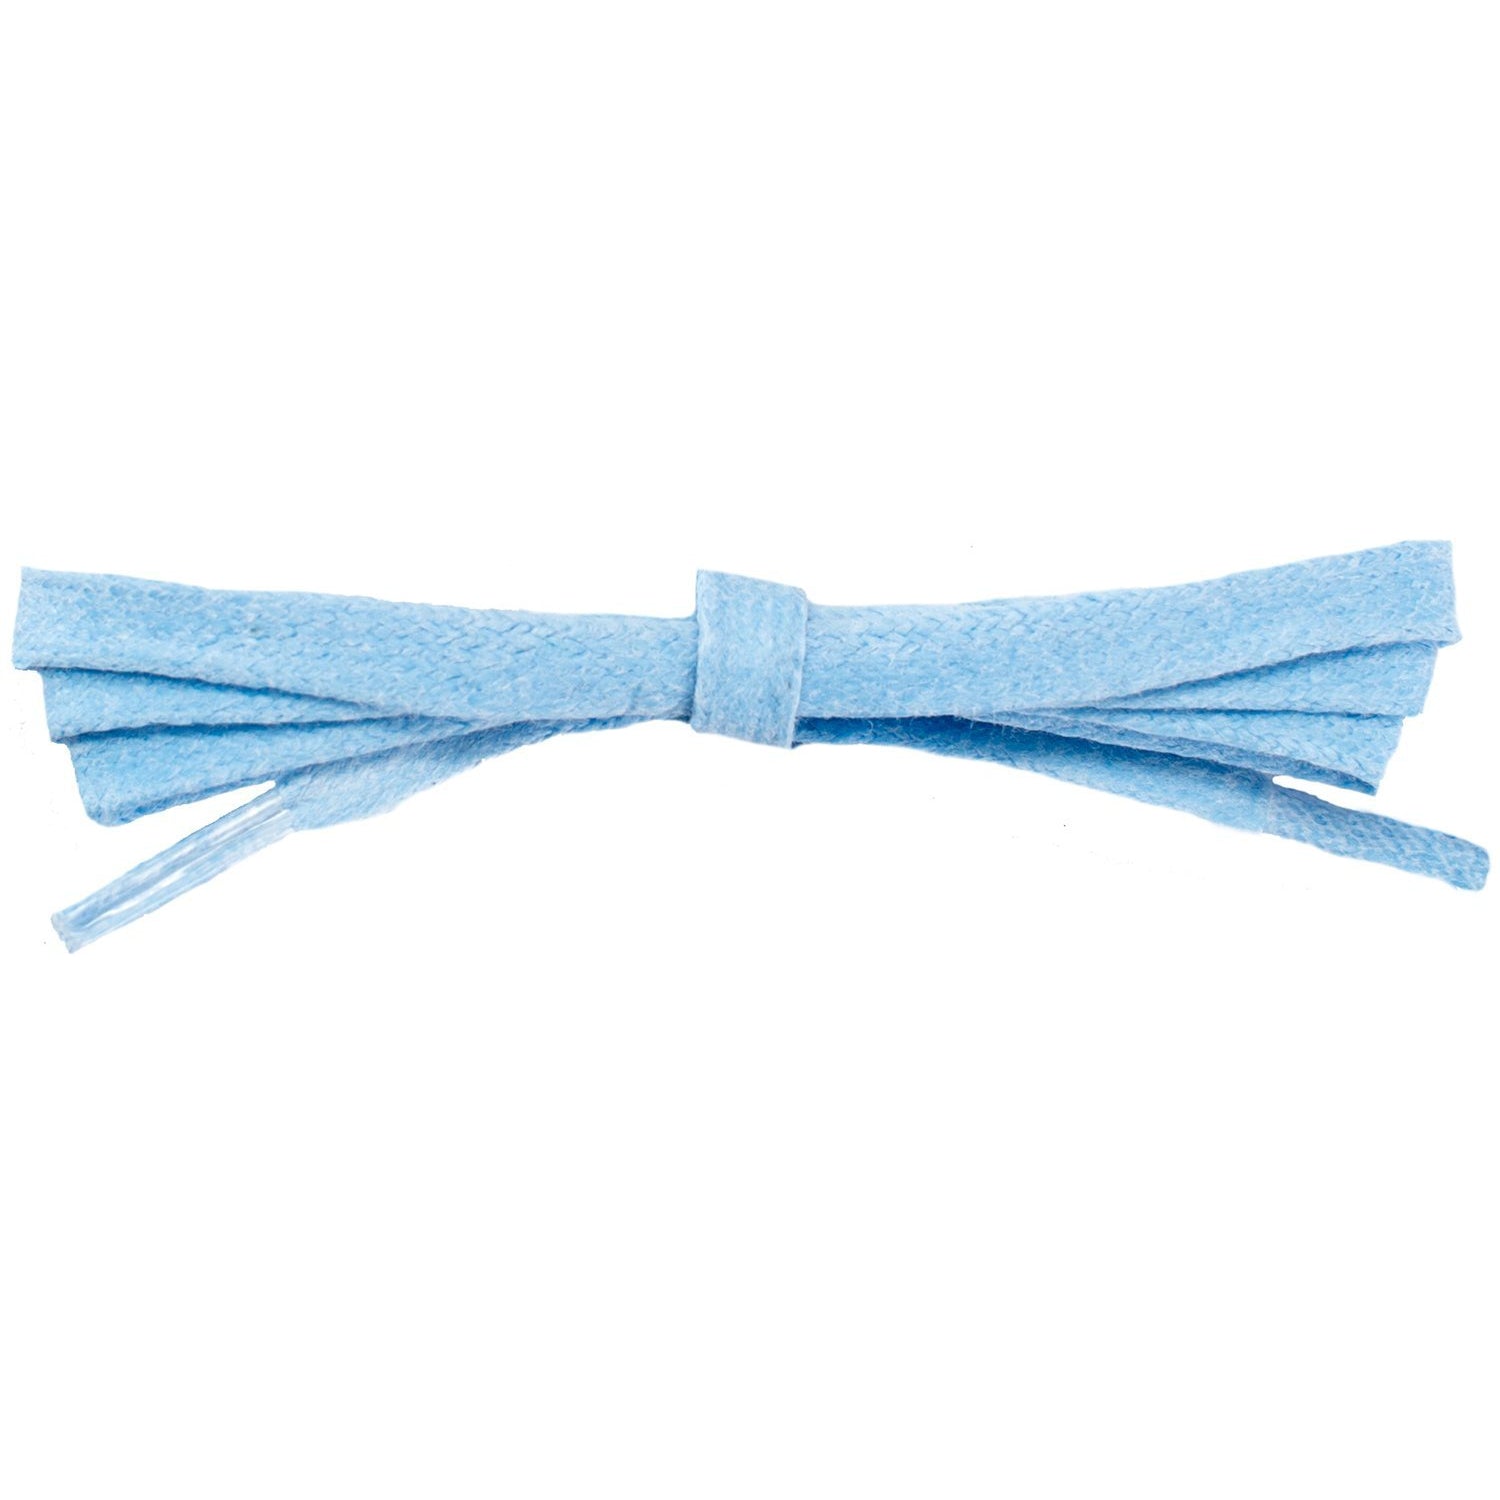 Wholesale Waxed Cotton Flat DRESS Laces 1/4'' - Light Blue (12 Pair Pack) Shoelaces